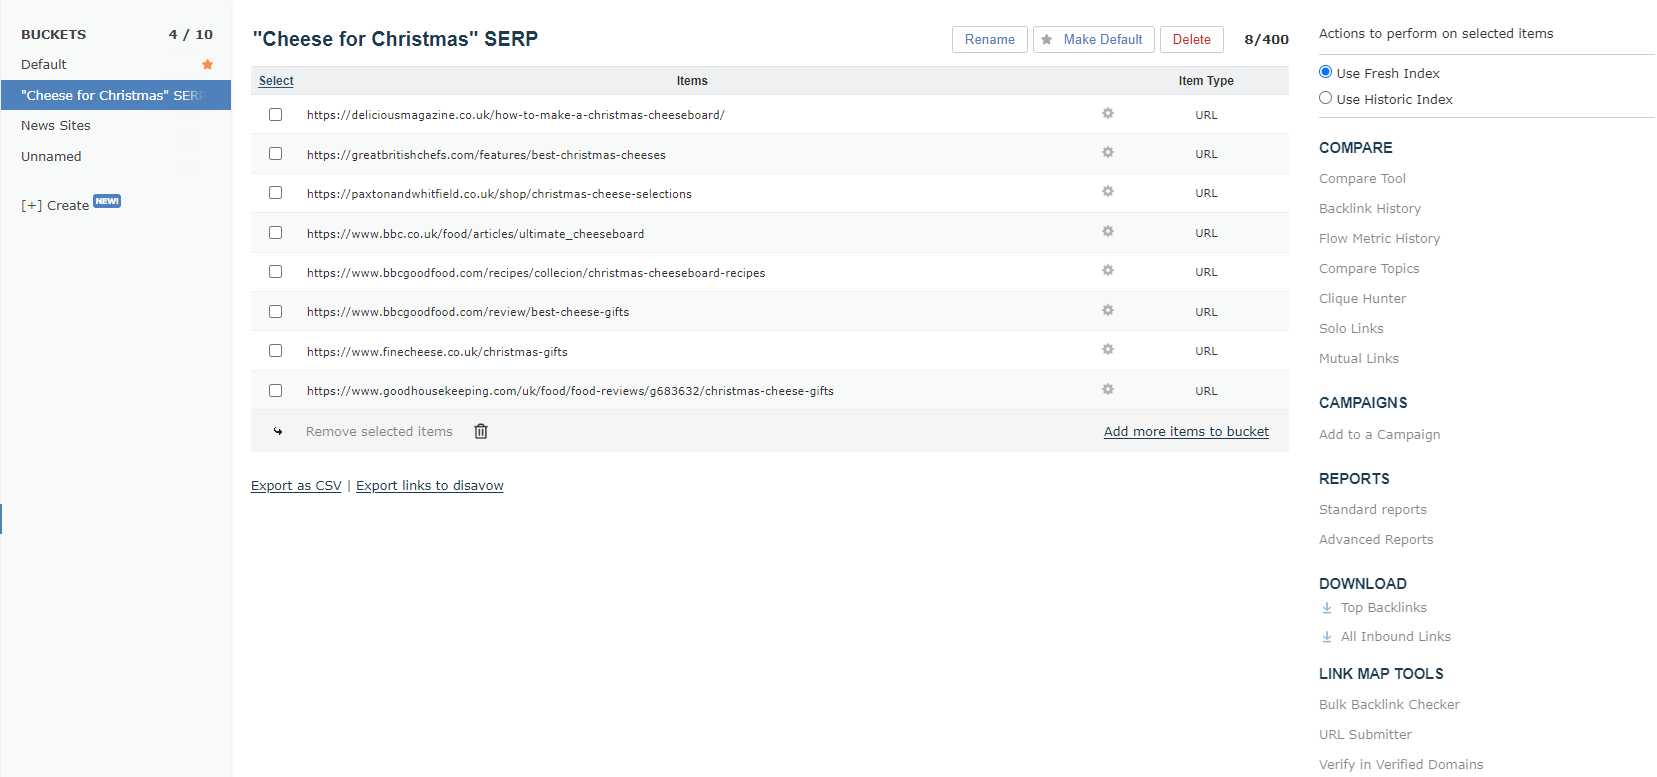 L'immagine si riferisce alla pagina relativa alla funzione Bucket, contenente otto URL classificati sotto il SERP 